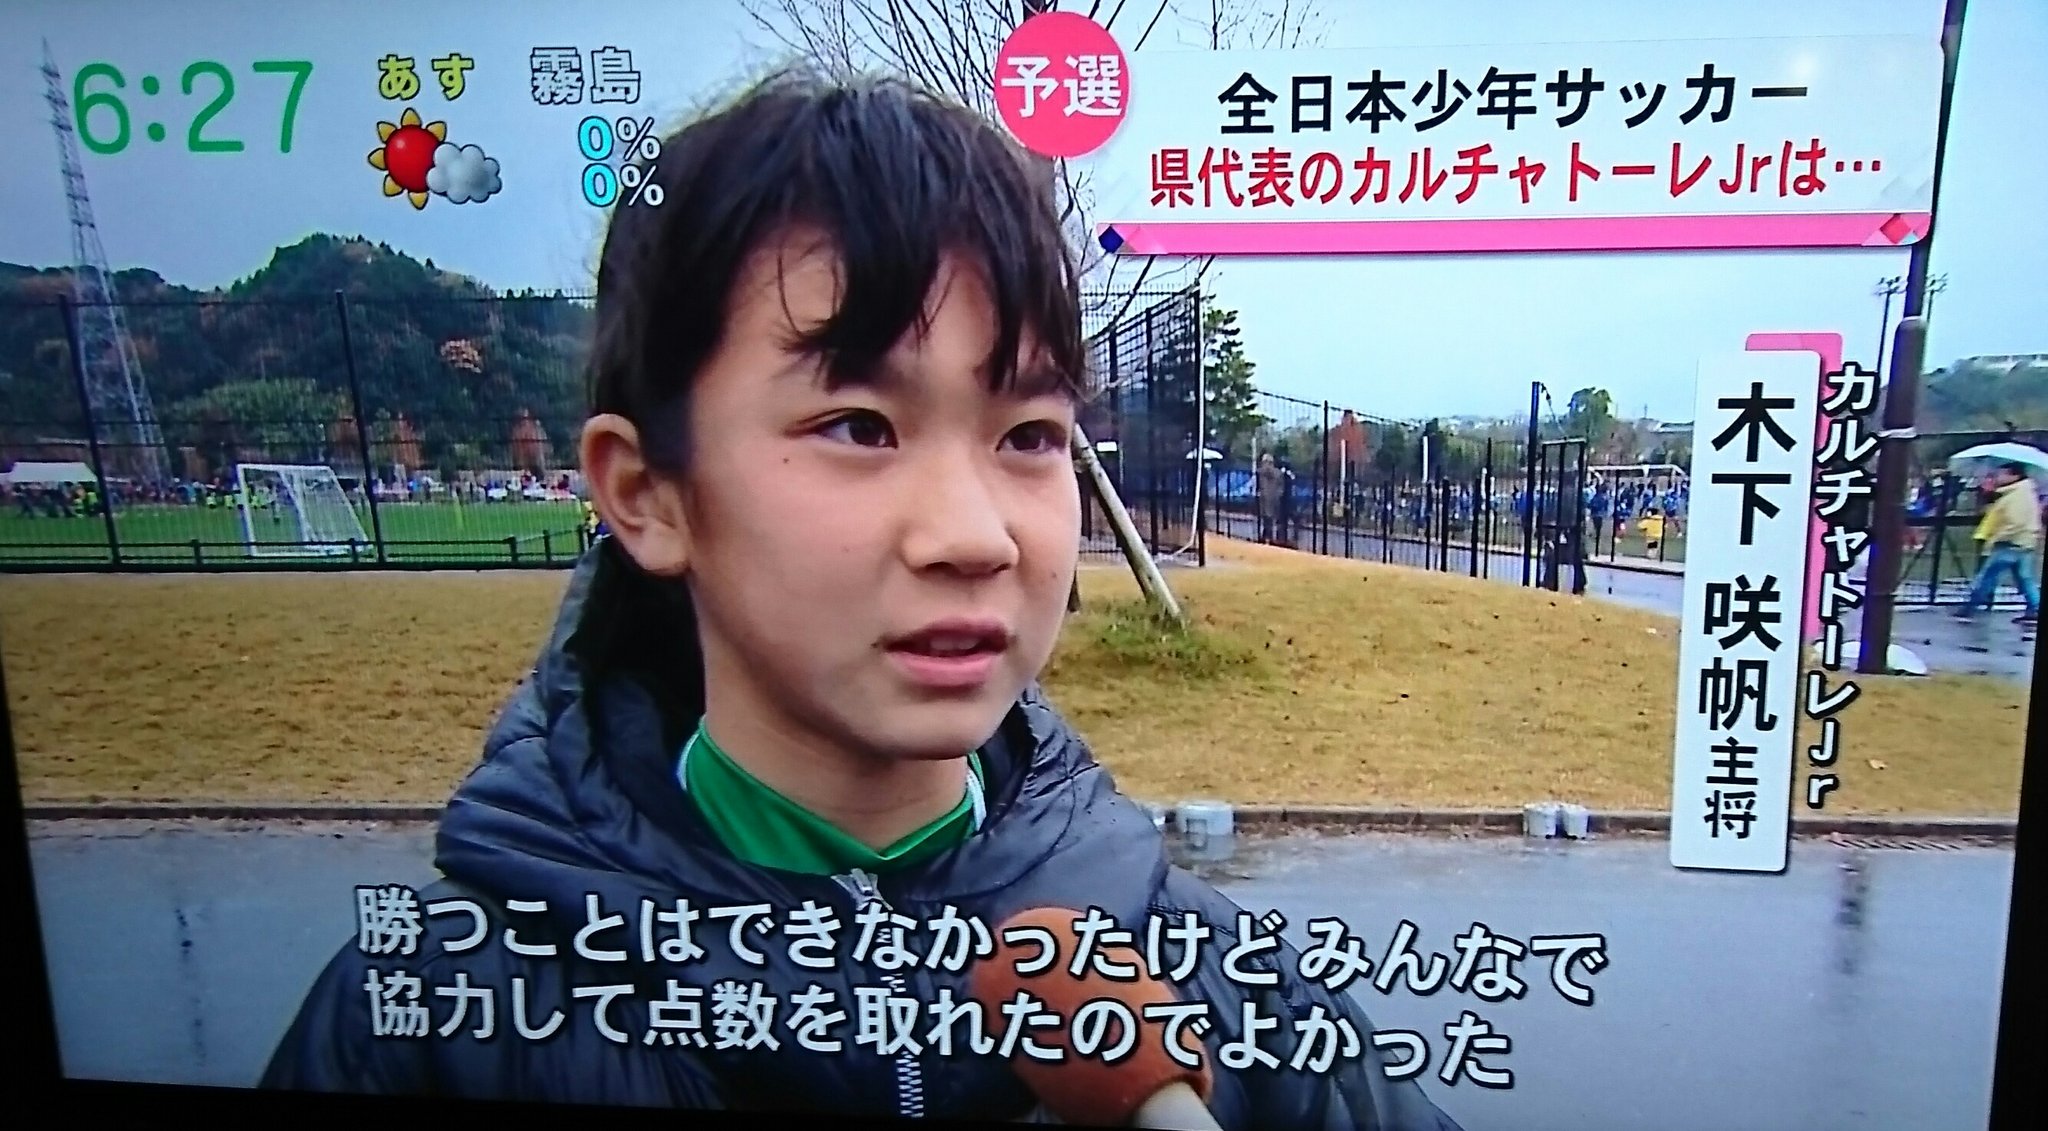 いぶおや 全日本少年サッカー 鹿児島代表のカルチャトーレjr のキャプテンはボランチの女の子 ジュブリーレ鹿児島 さん 注目ですよ T Co F6ojnn6hzy Twitter